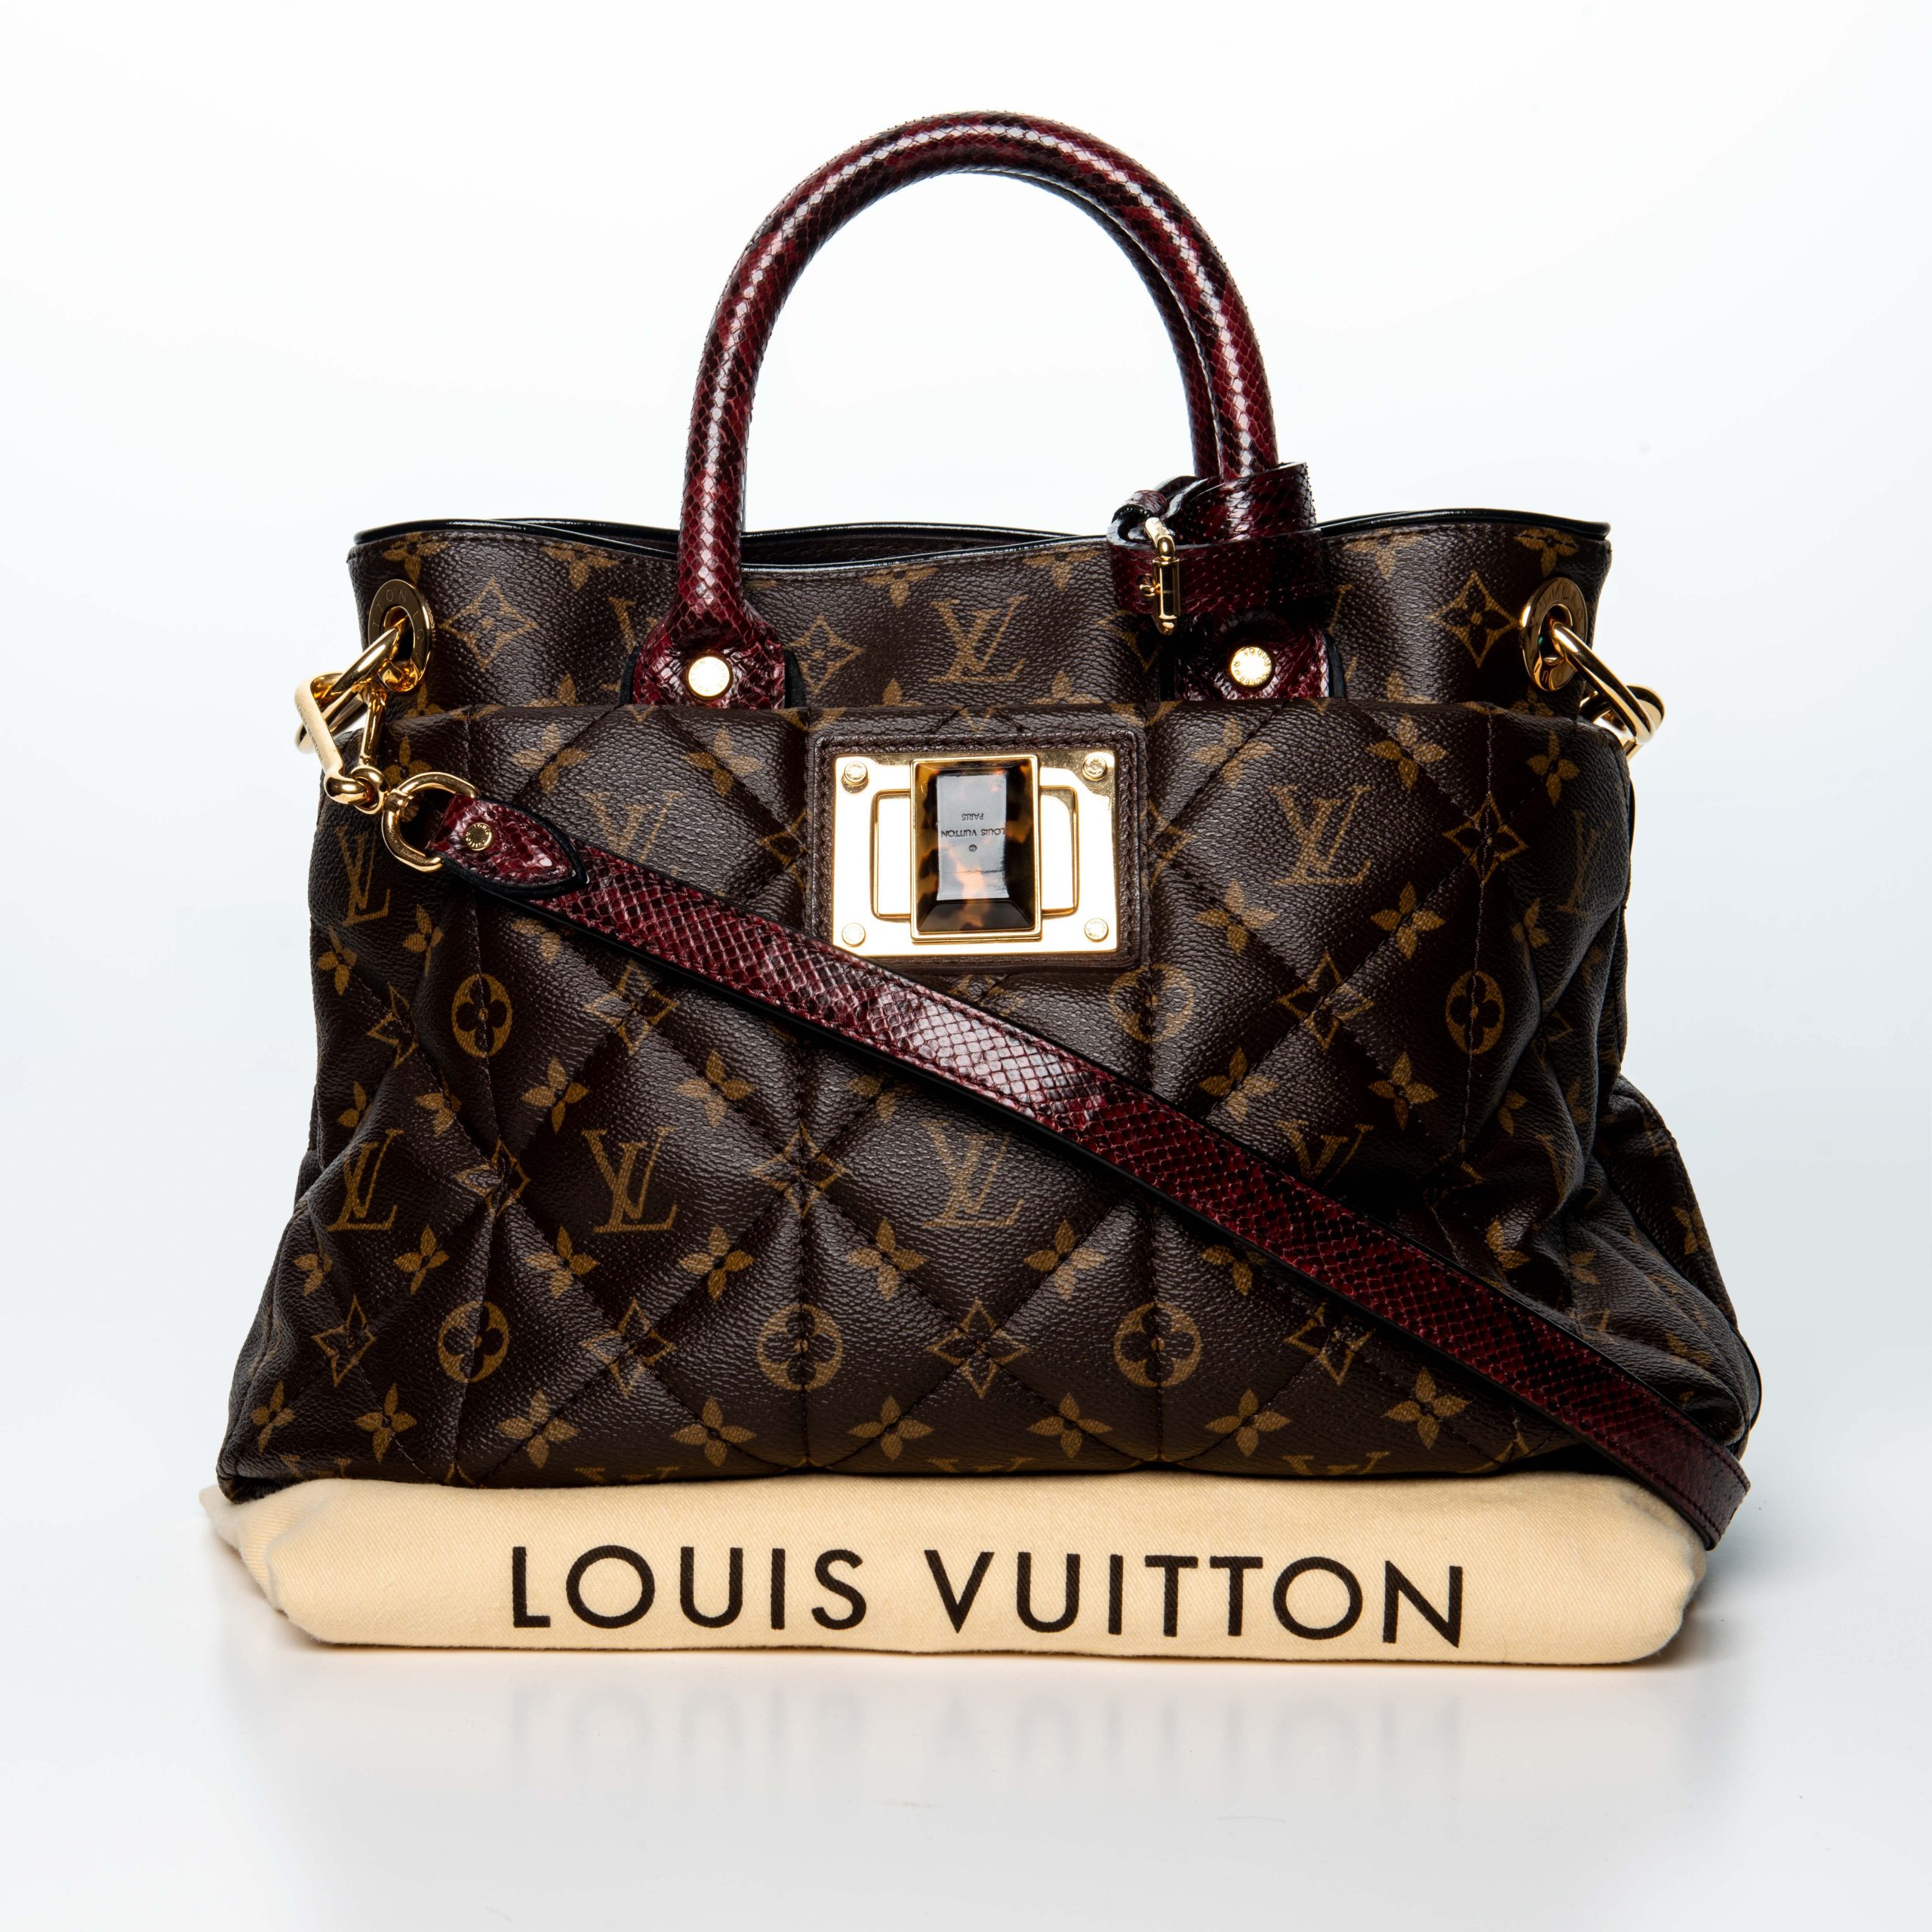 Borsa Louis Vuitton edizione limitata